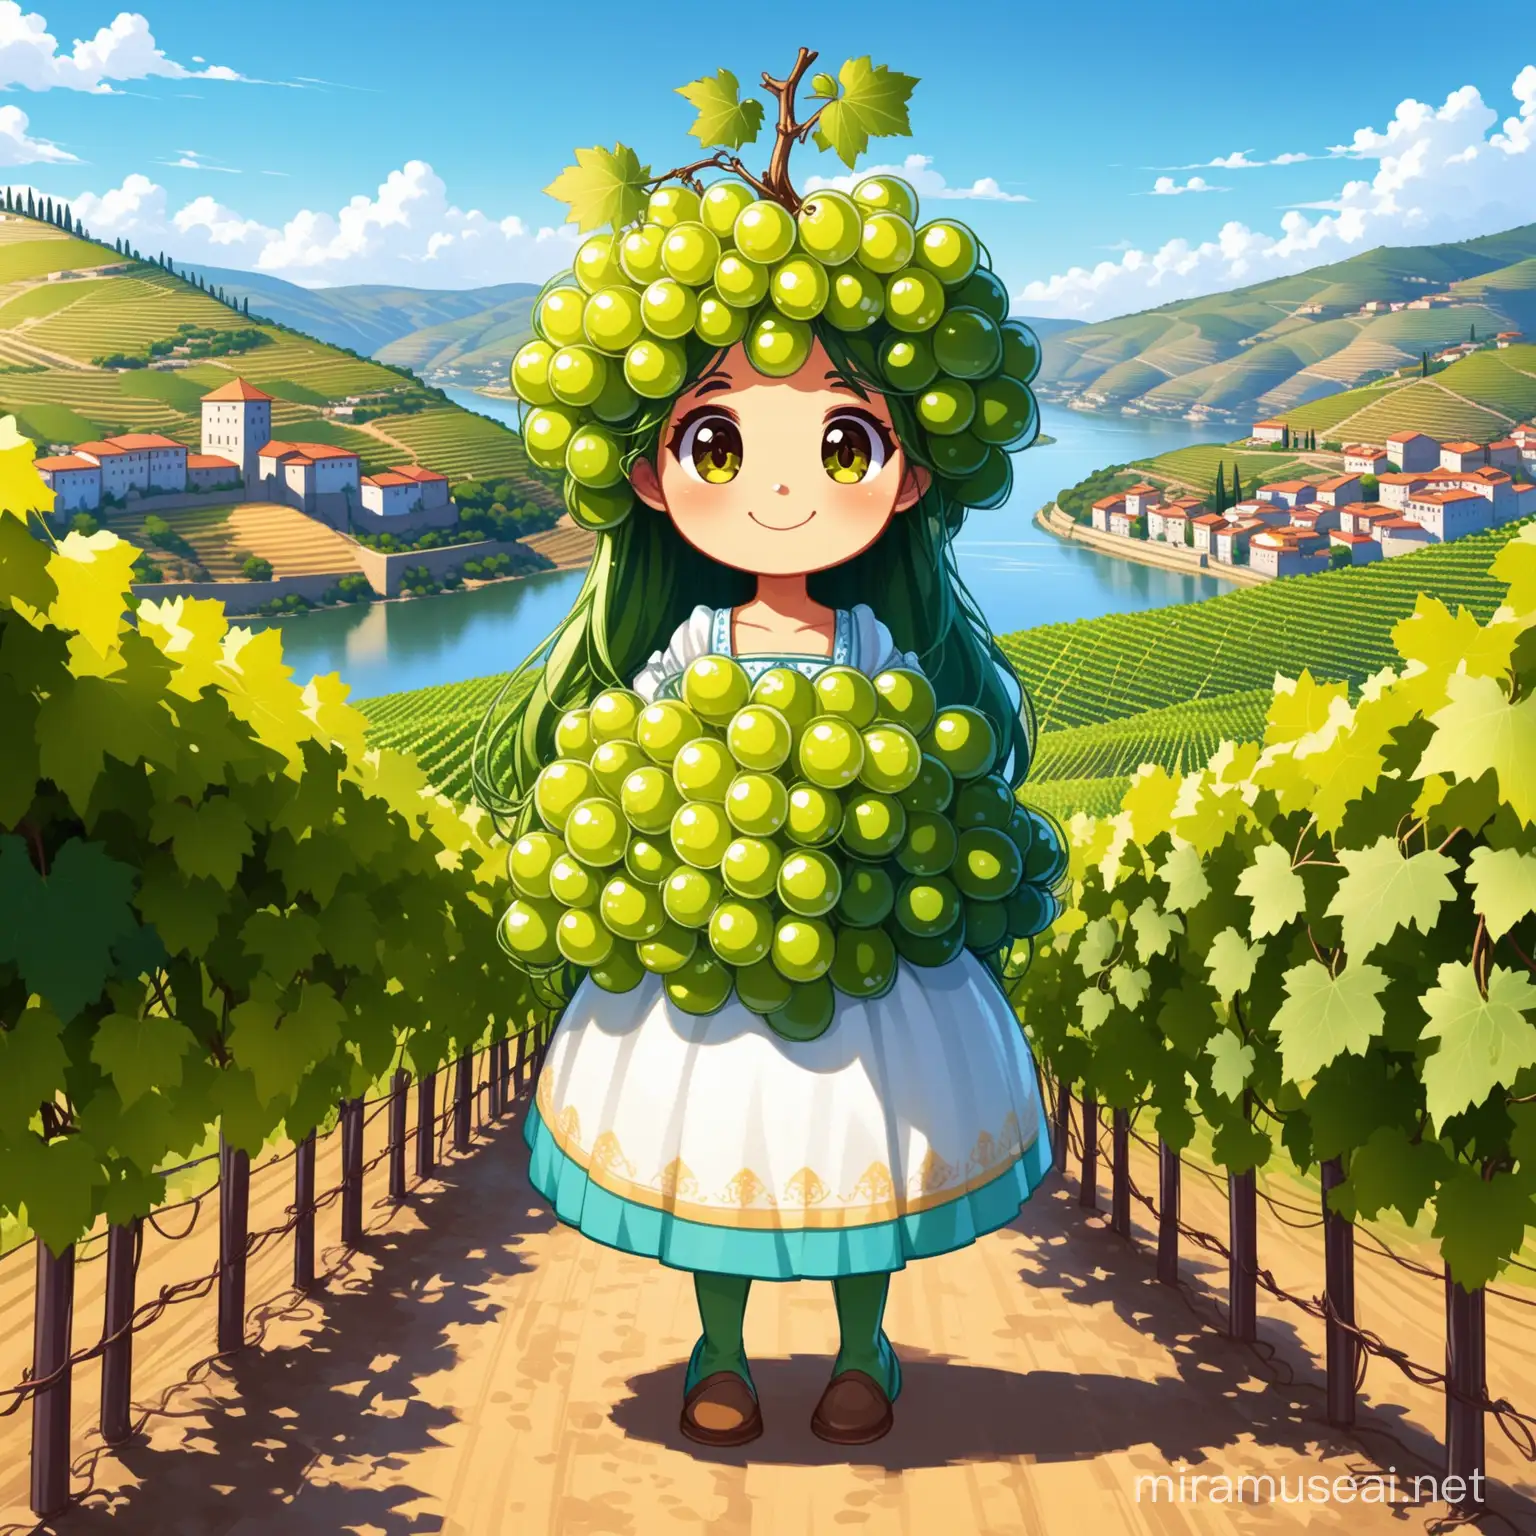 Inspirado nas vinhas do Vale do Douro, você pode criar uma mascote baseada numa videira antropomorfizada. Ela poderia ter cachos de uvas como cabelo e vestir-se com trajes típicos da região.